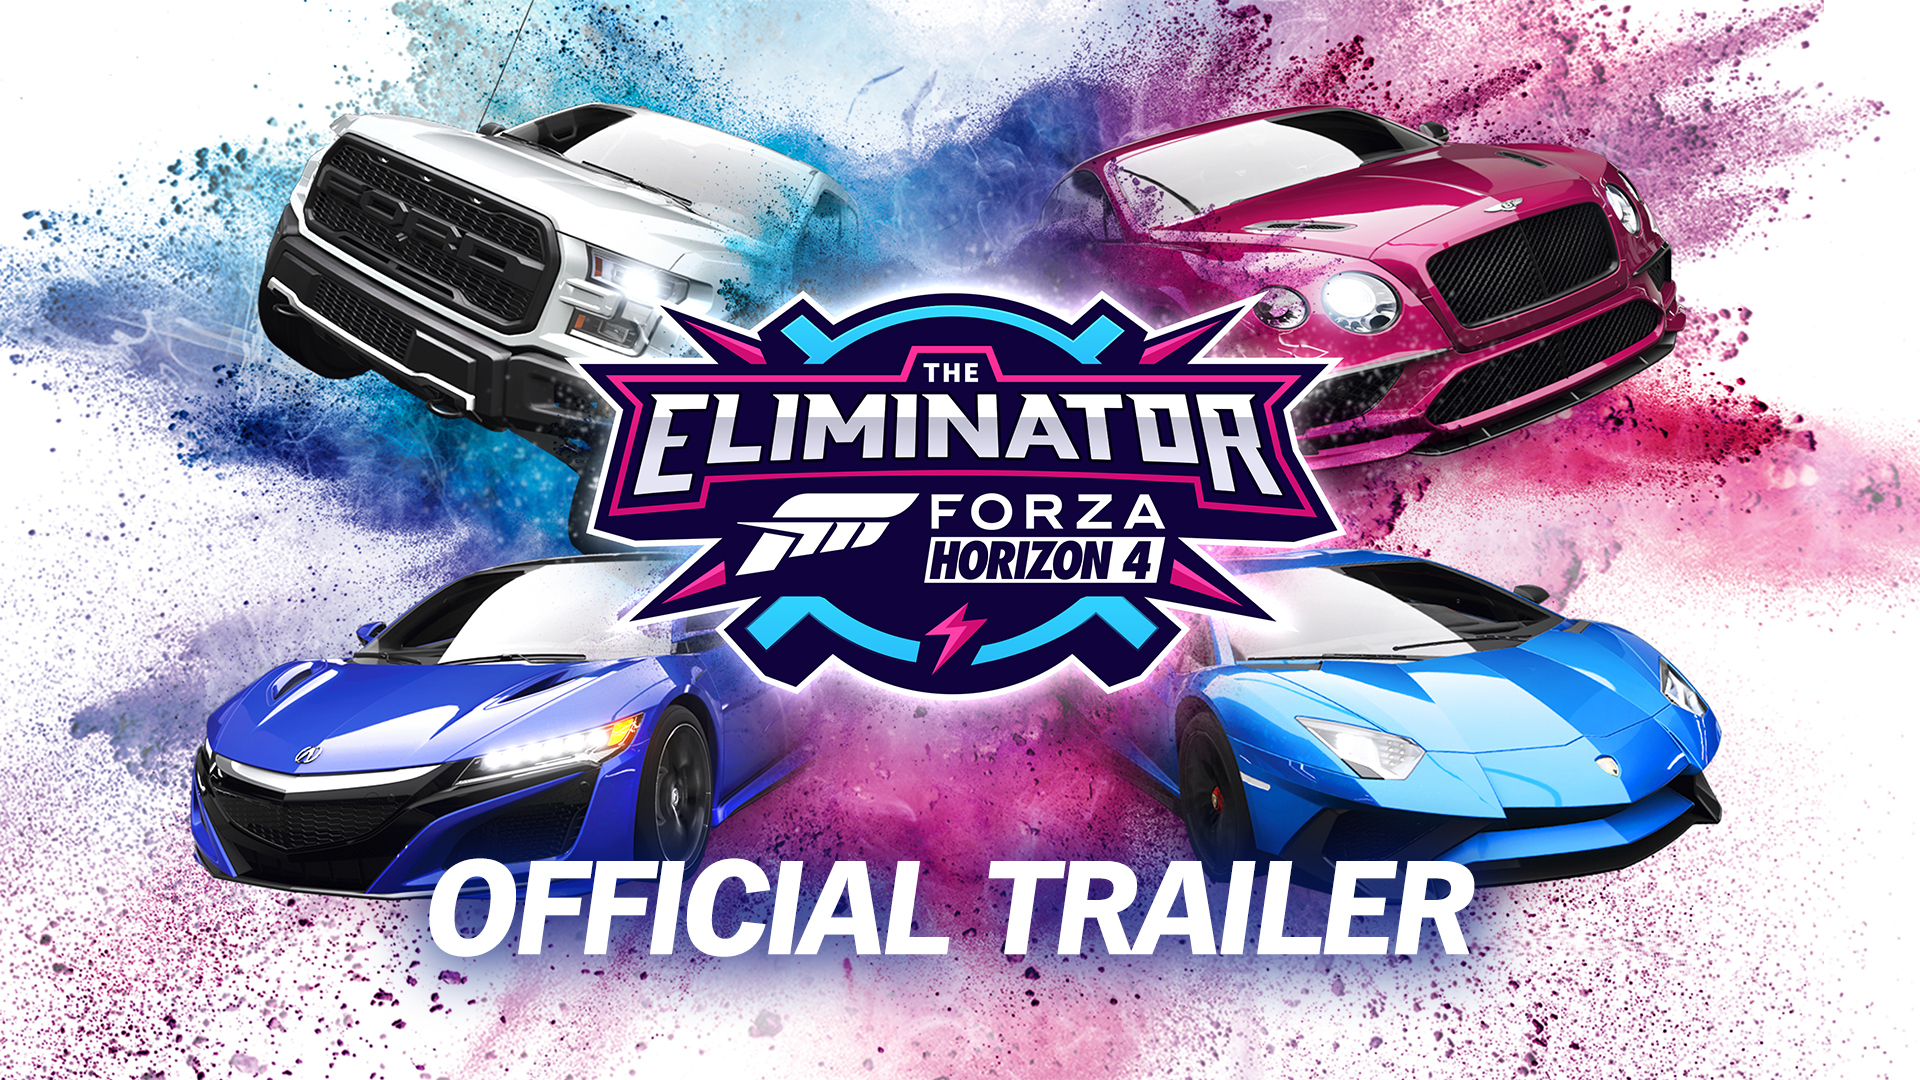 Video For The Eliminator, un nouveau mode inspiré par les Battle Royale, arrive dans “Forza Horizon 4” gratuitement dès aujourd’hui !